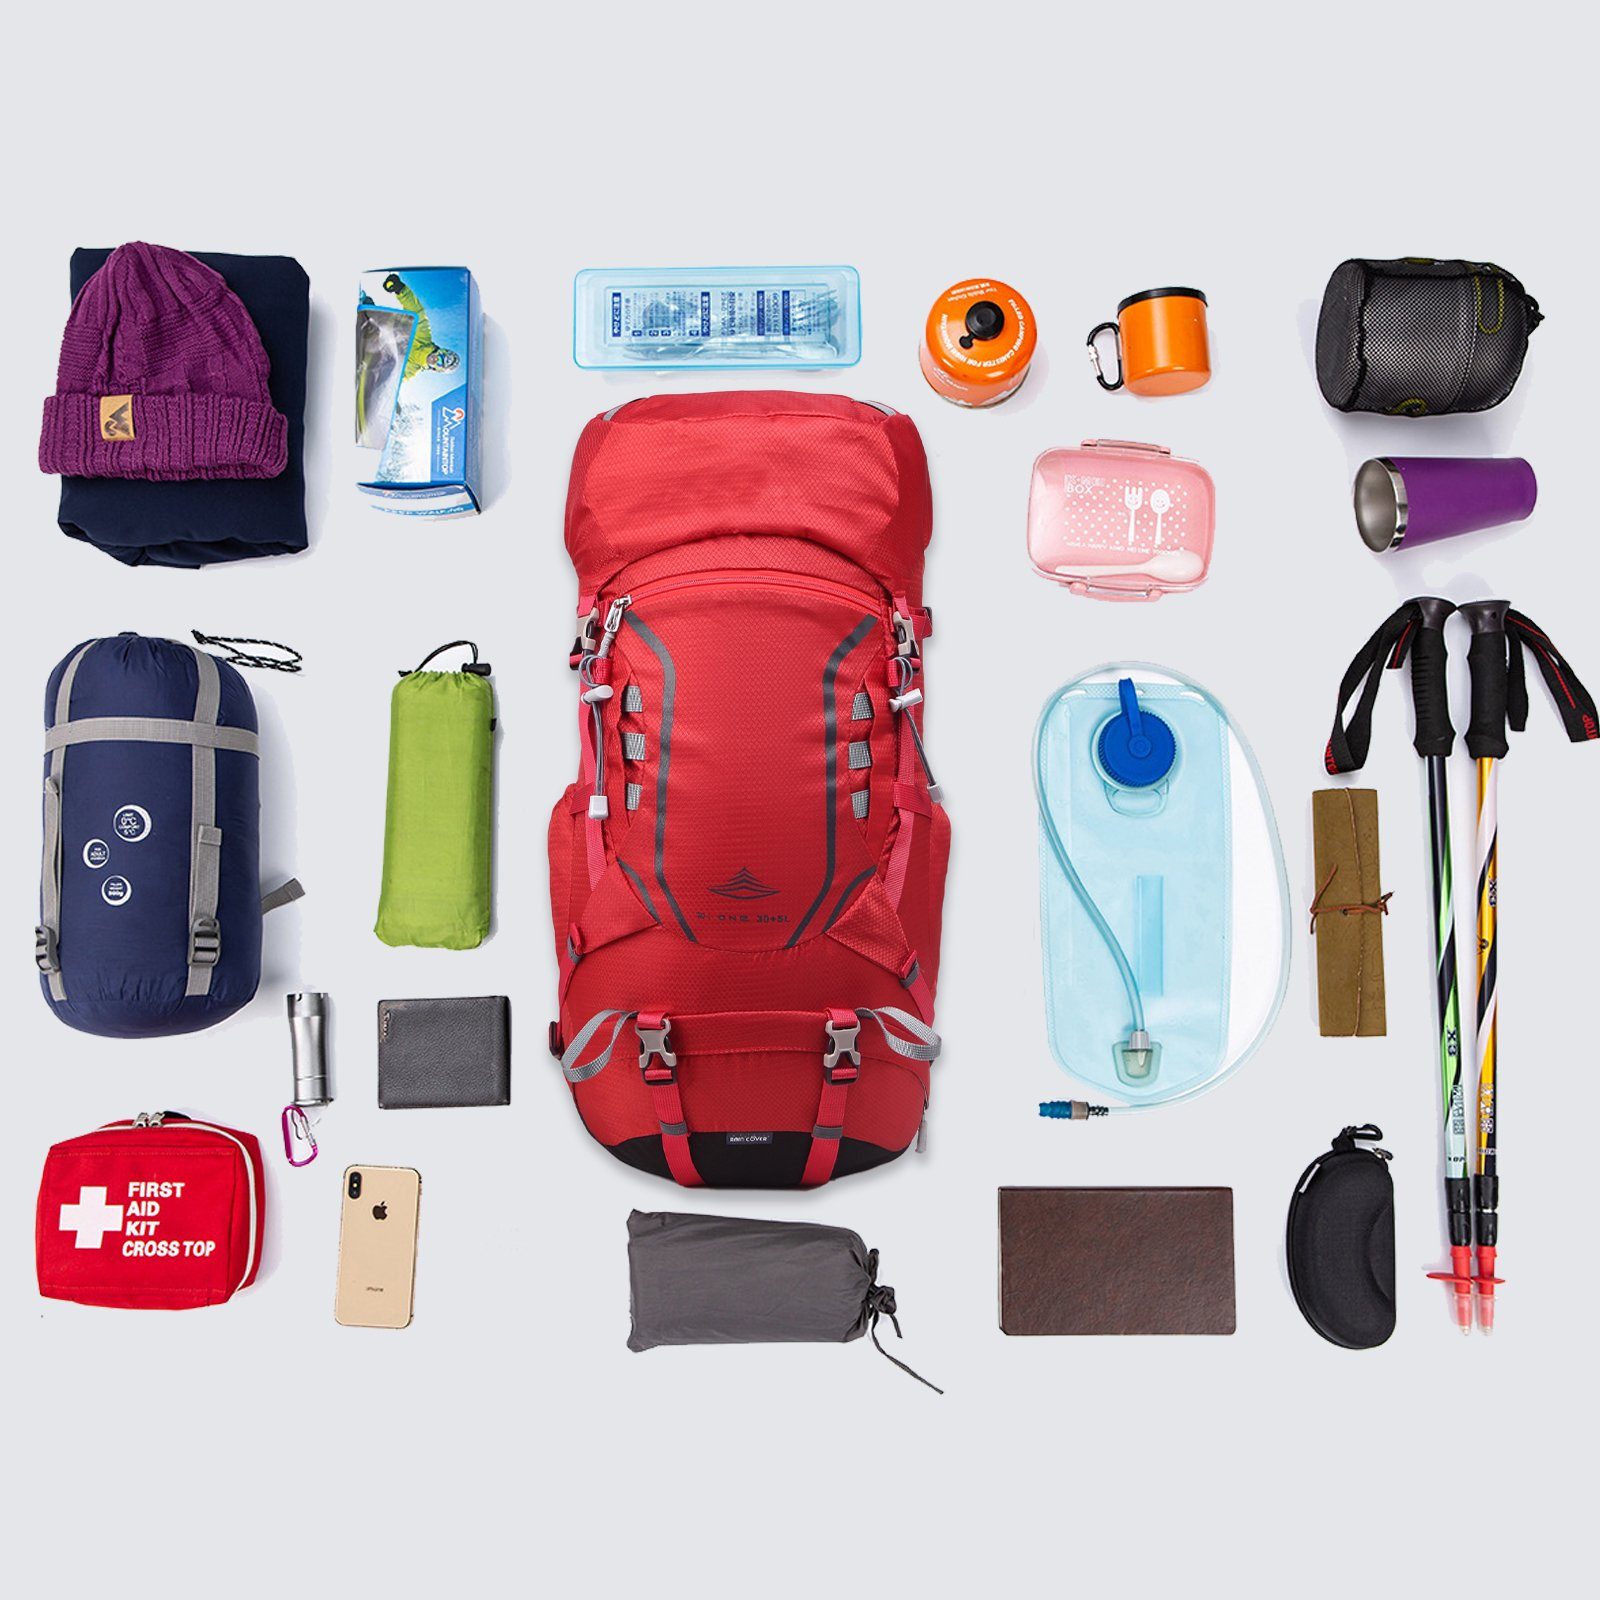 Trekking Reisen mit Wasserdicht 35L Outdoor Wanderrucksack, Großer Rot TAN.TOMI Regenschutz), für Kletterrucksack Multifunktionaler Camping (Einschließlich Regenschutz (30L+5L)